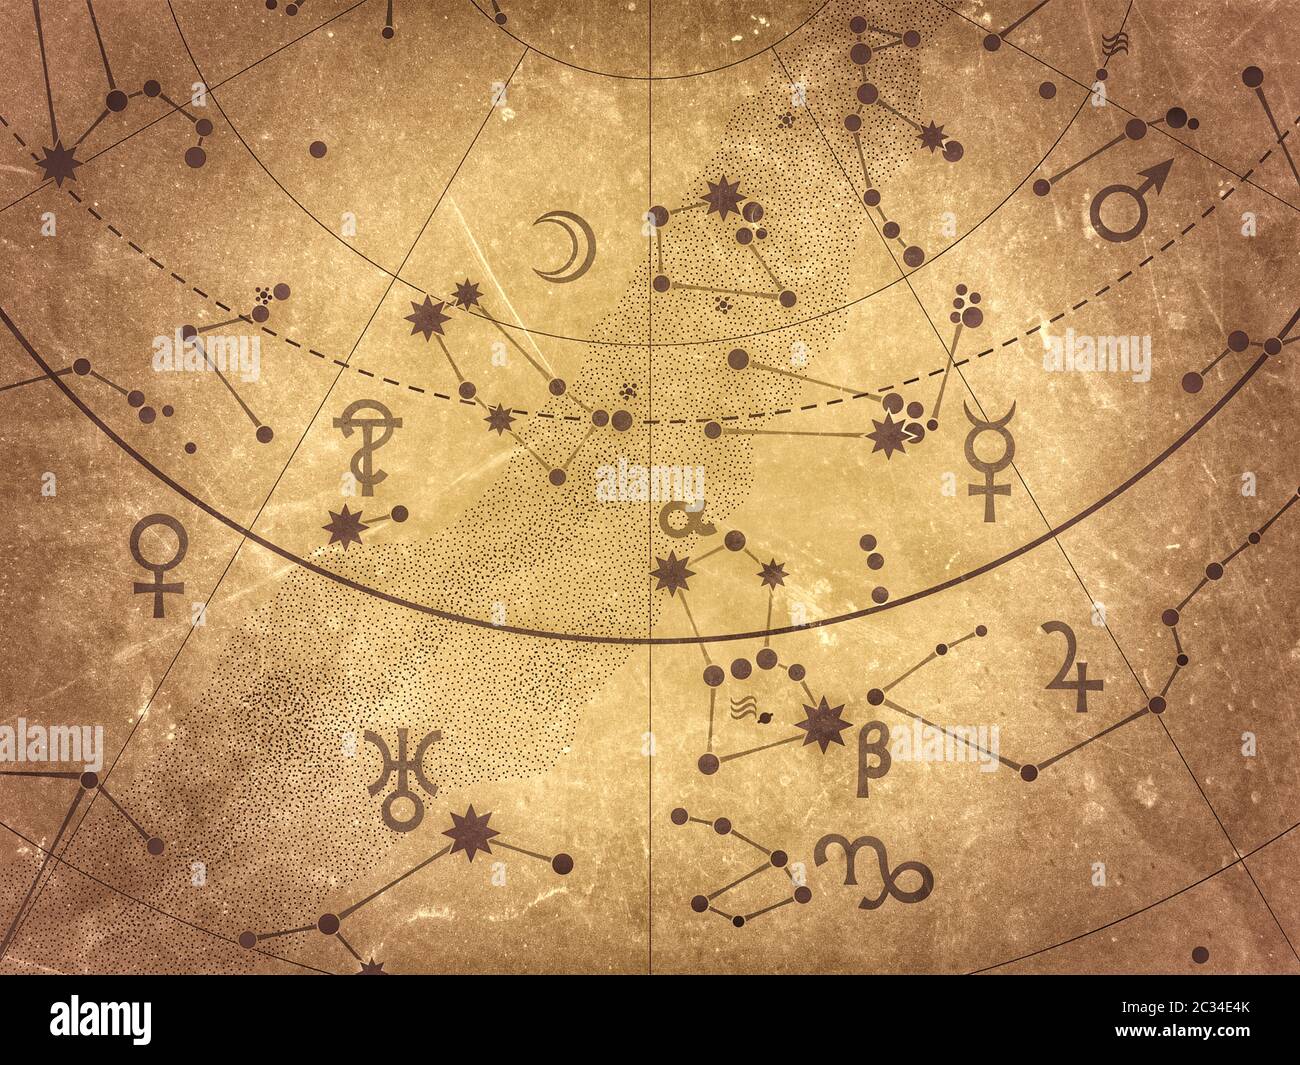 Fragment D'Atlas Astronomique Céleste : Étoiles, Planètes, Cieux. (Remake vintage de grunge alternatif: Version Selenium antique). Banque D'Images